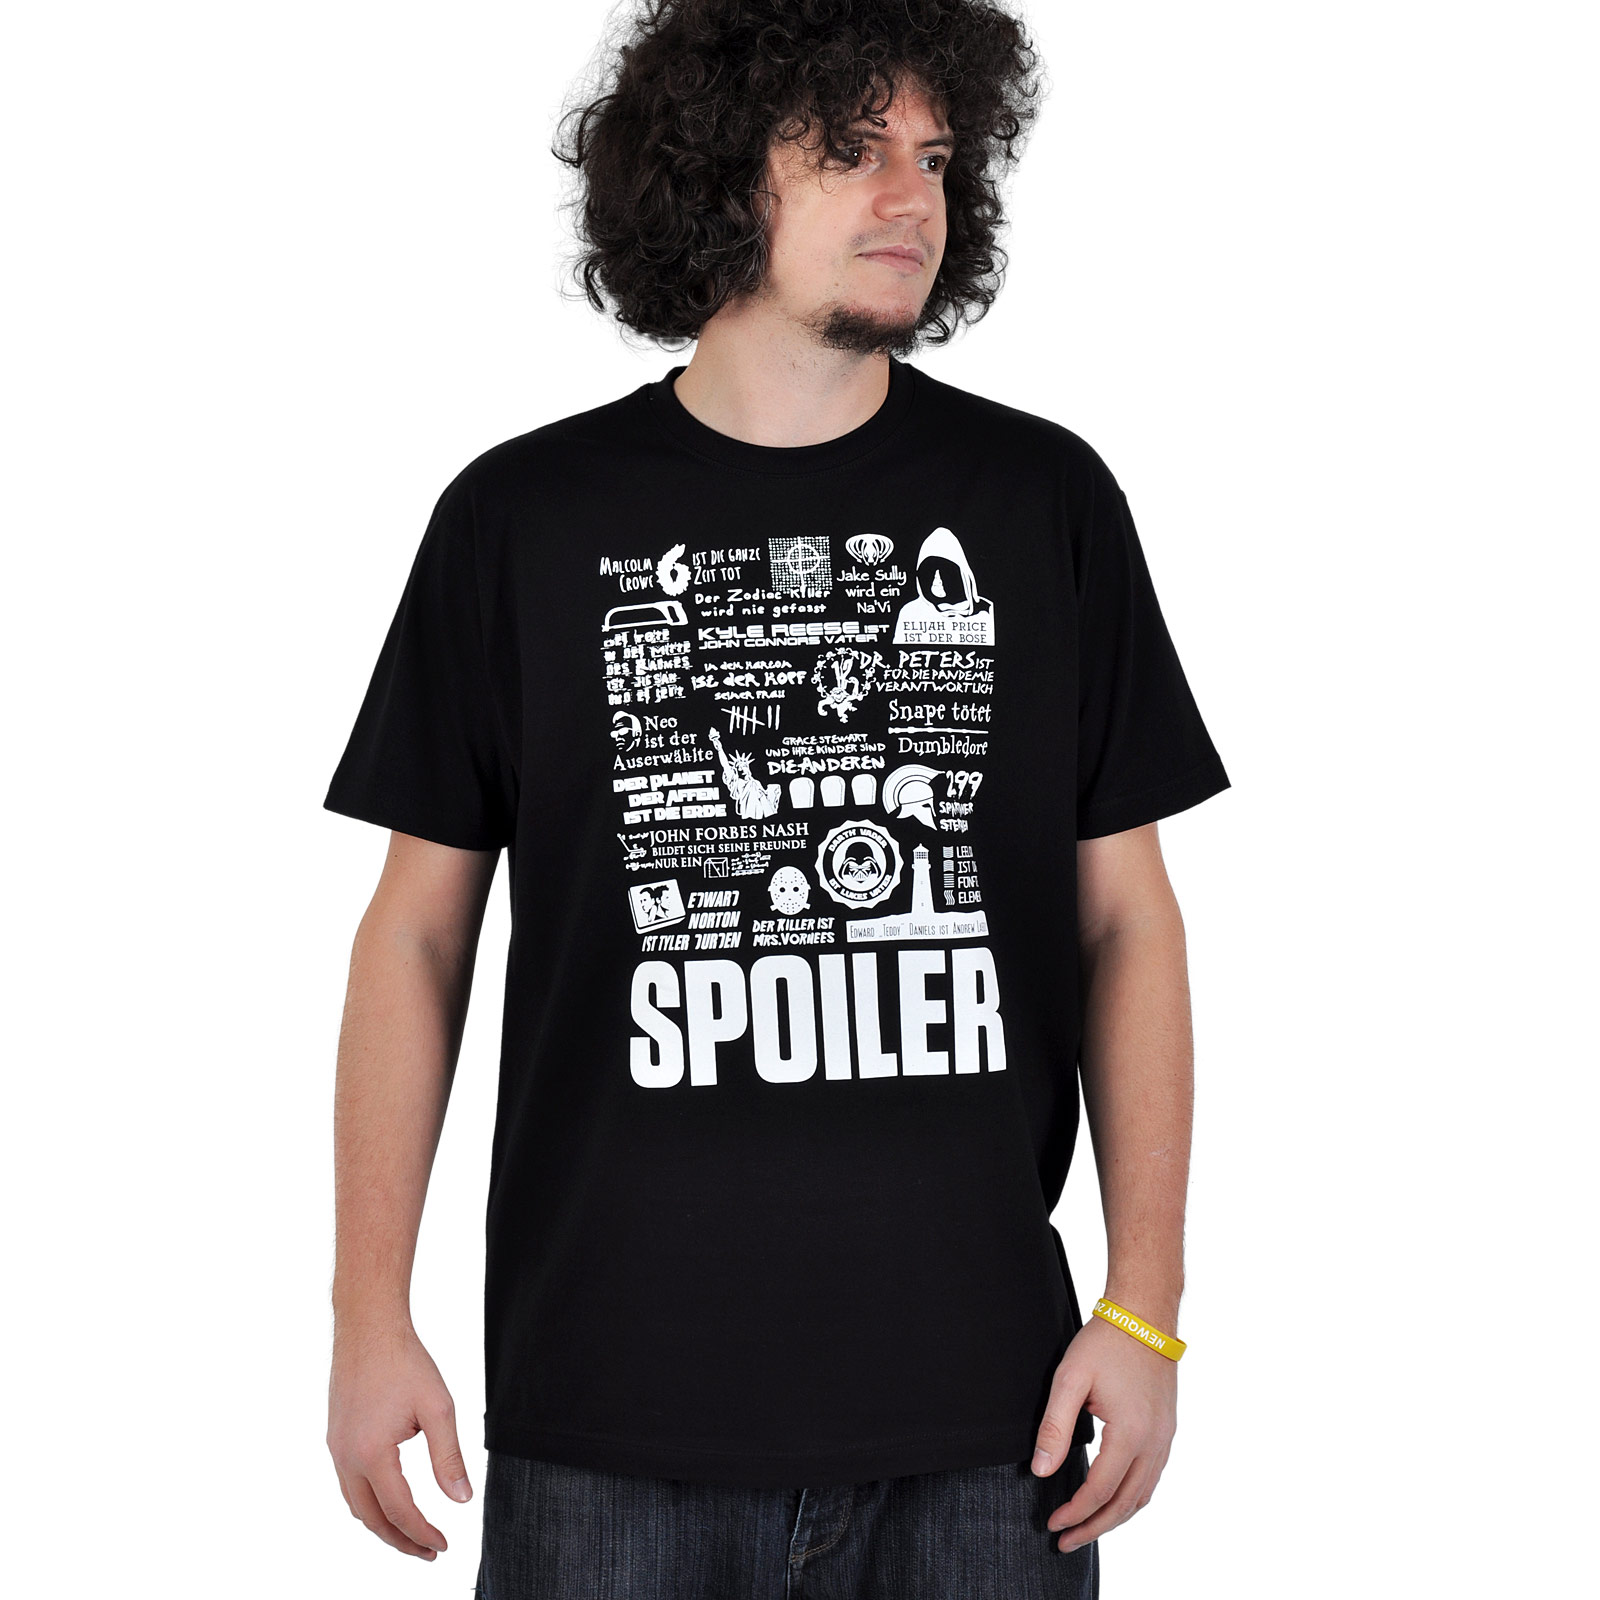 T-shirt Spoiler